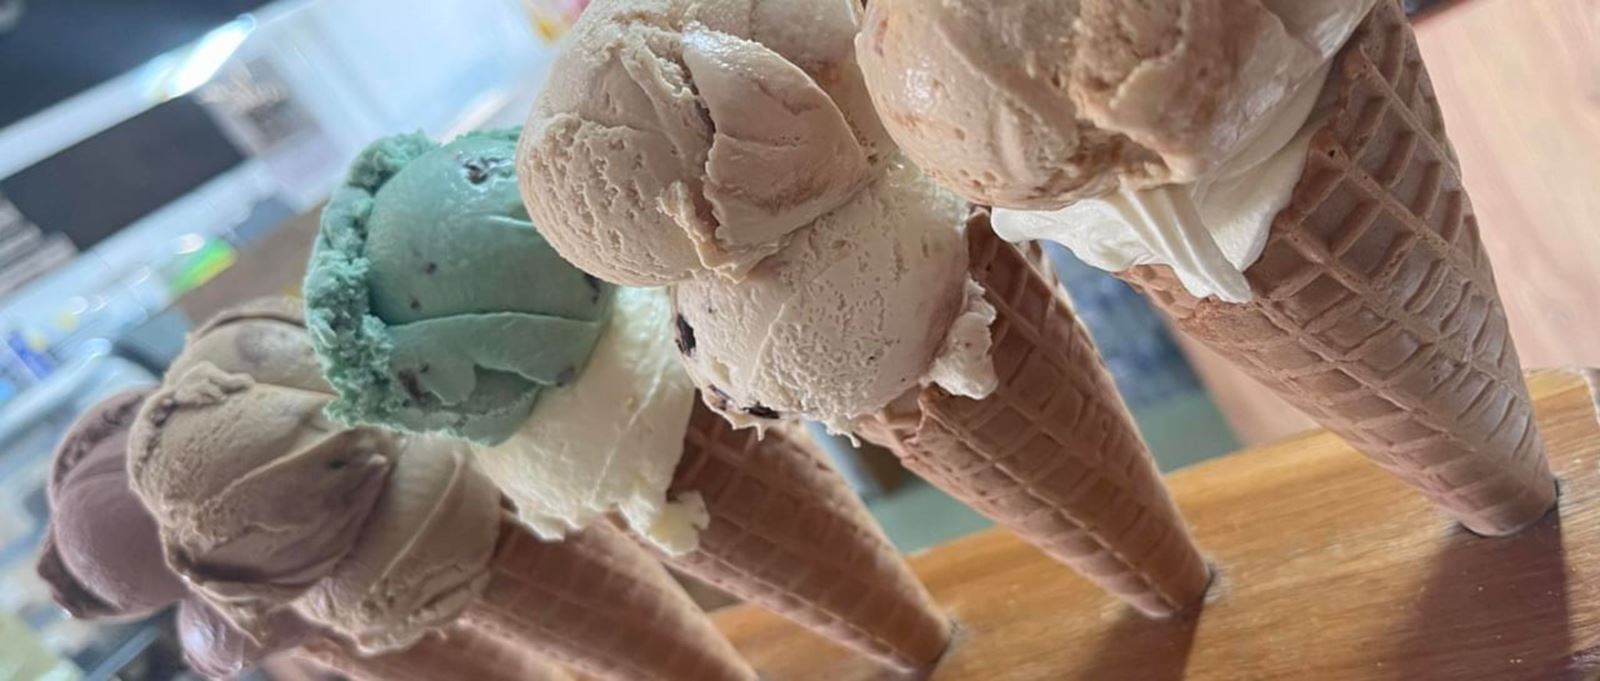 Ice creams at Flintstones Tearooms, Emsworth